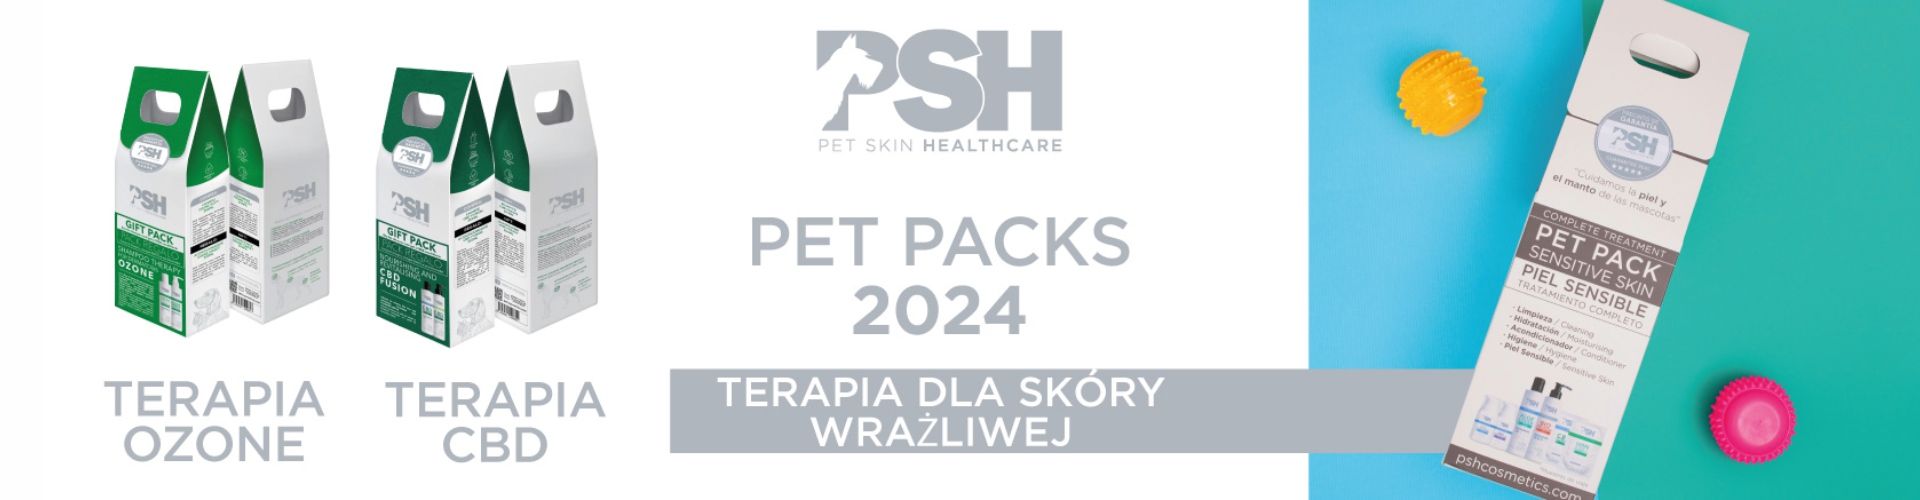 PSH Pet Packs